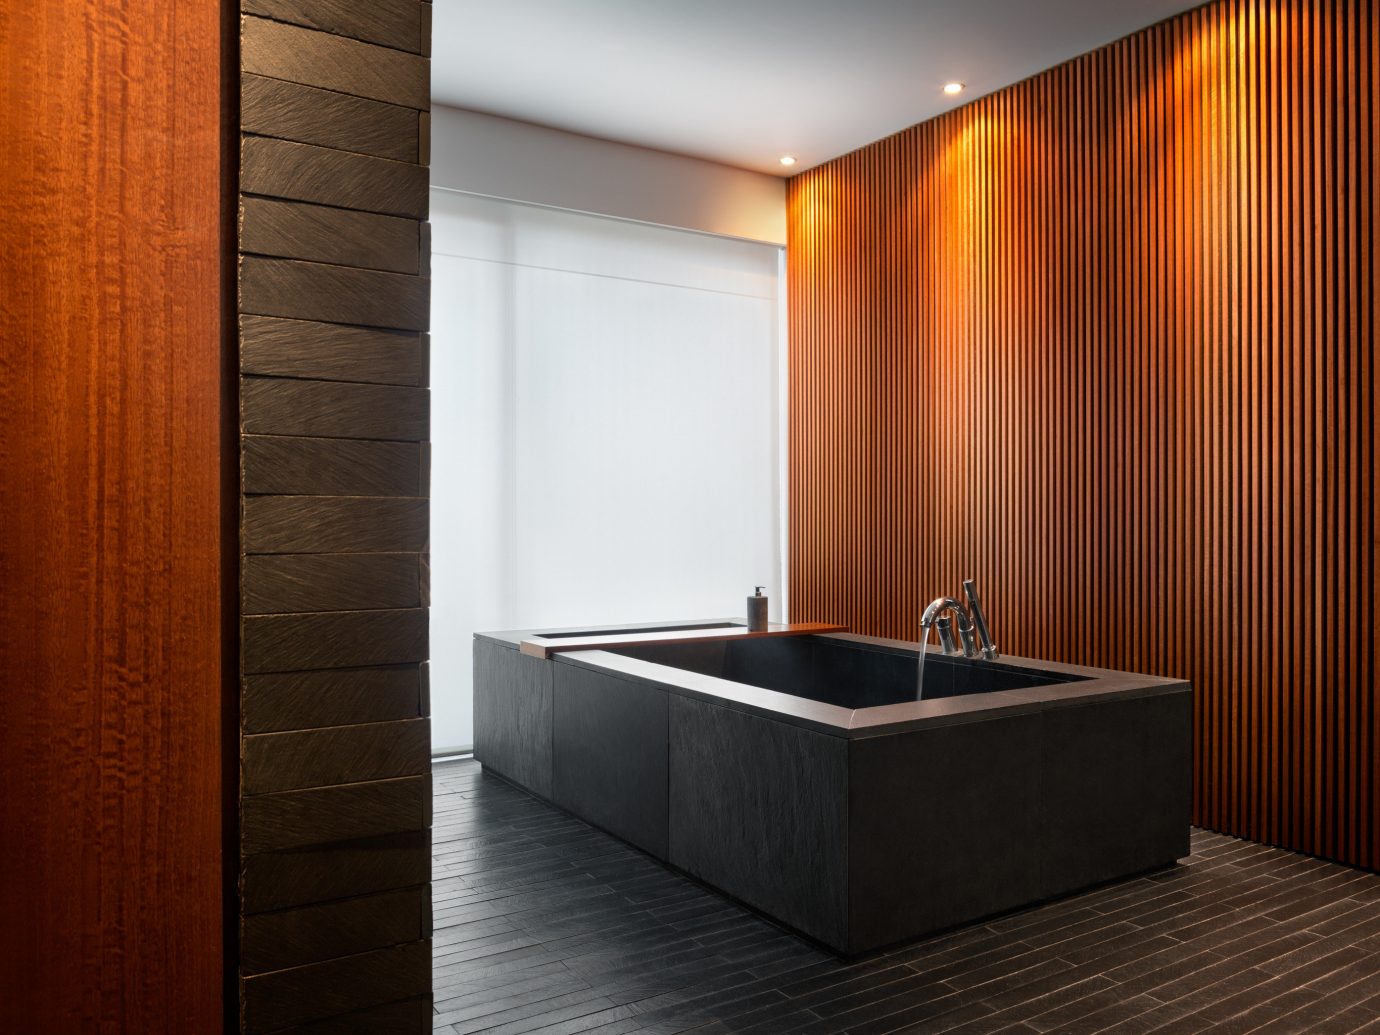 Hotels Offbeat indoor wall floor room bathroom bathtub interior design plumbing fixture Suite Design